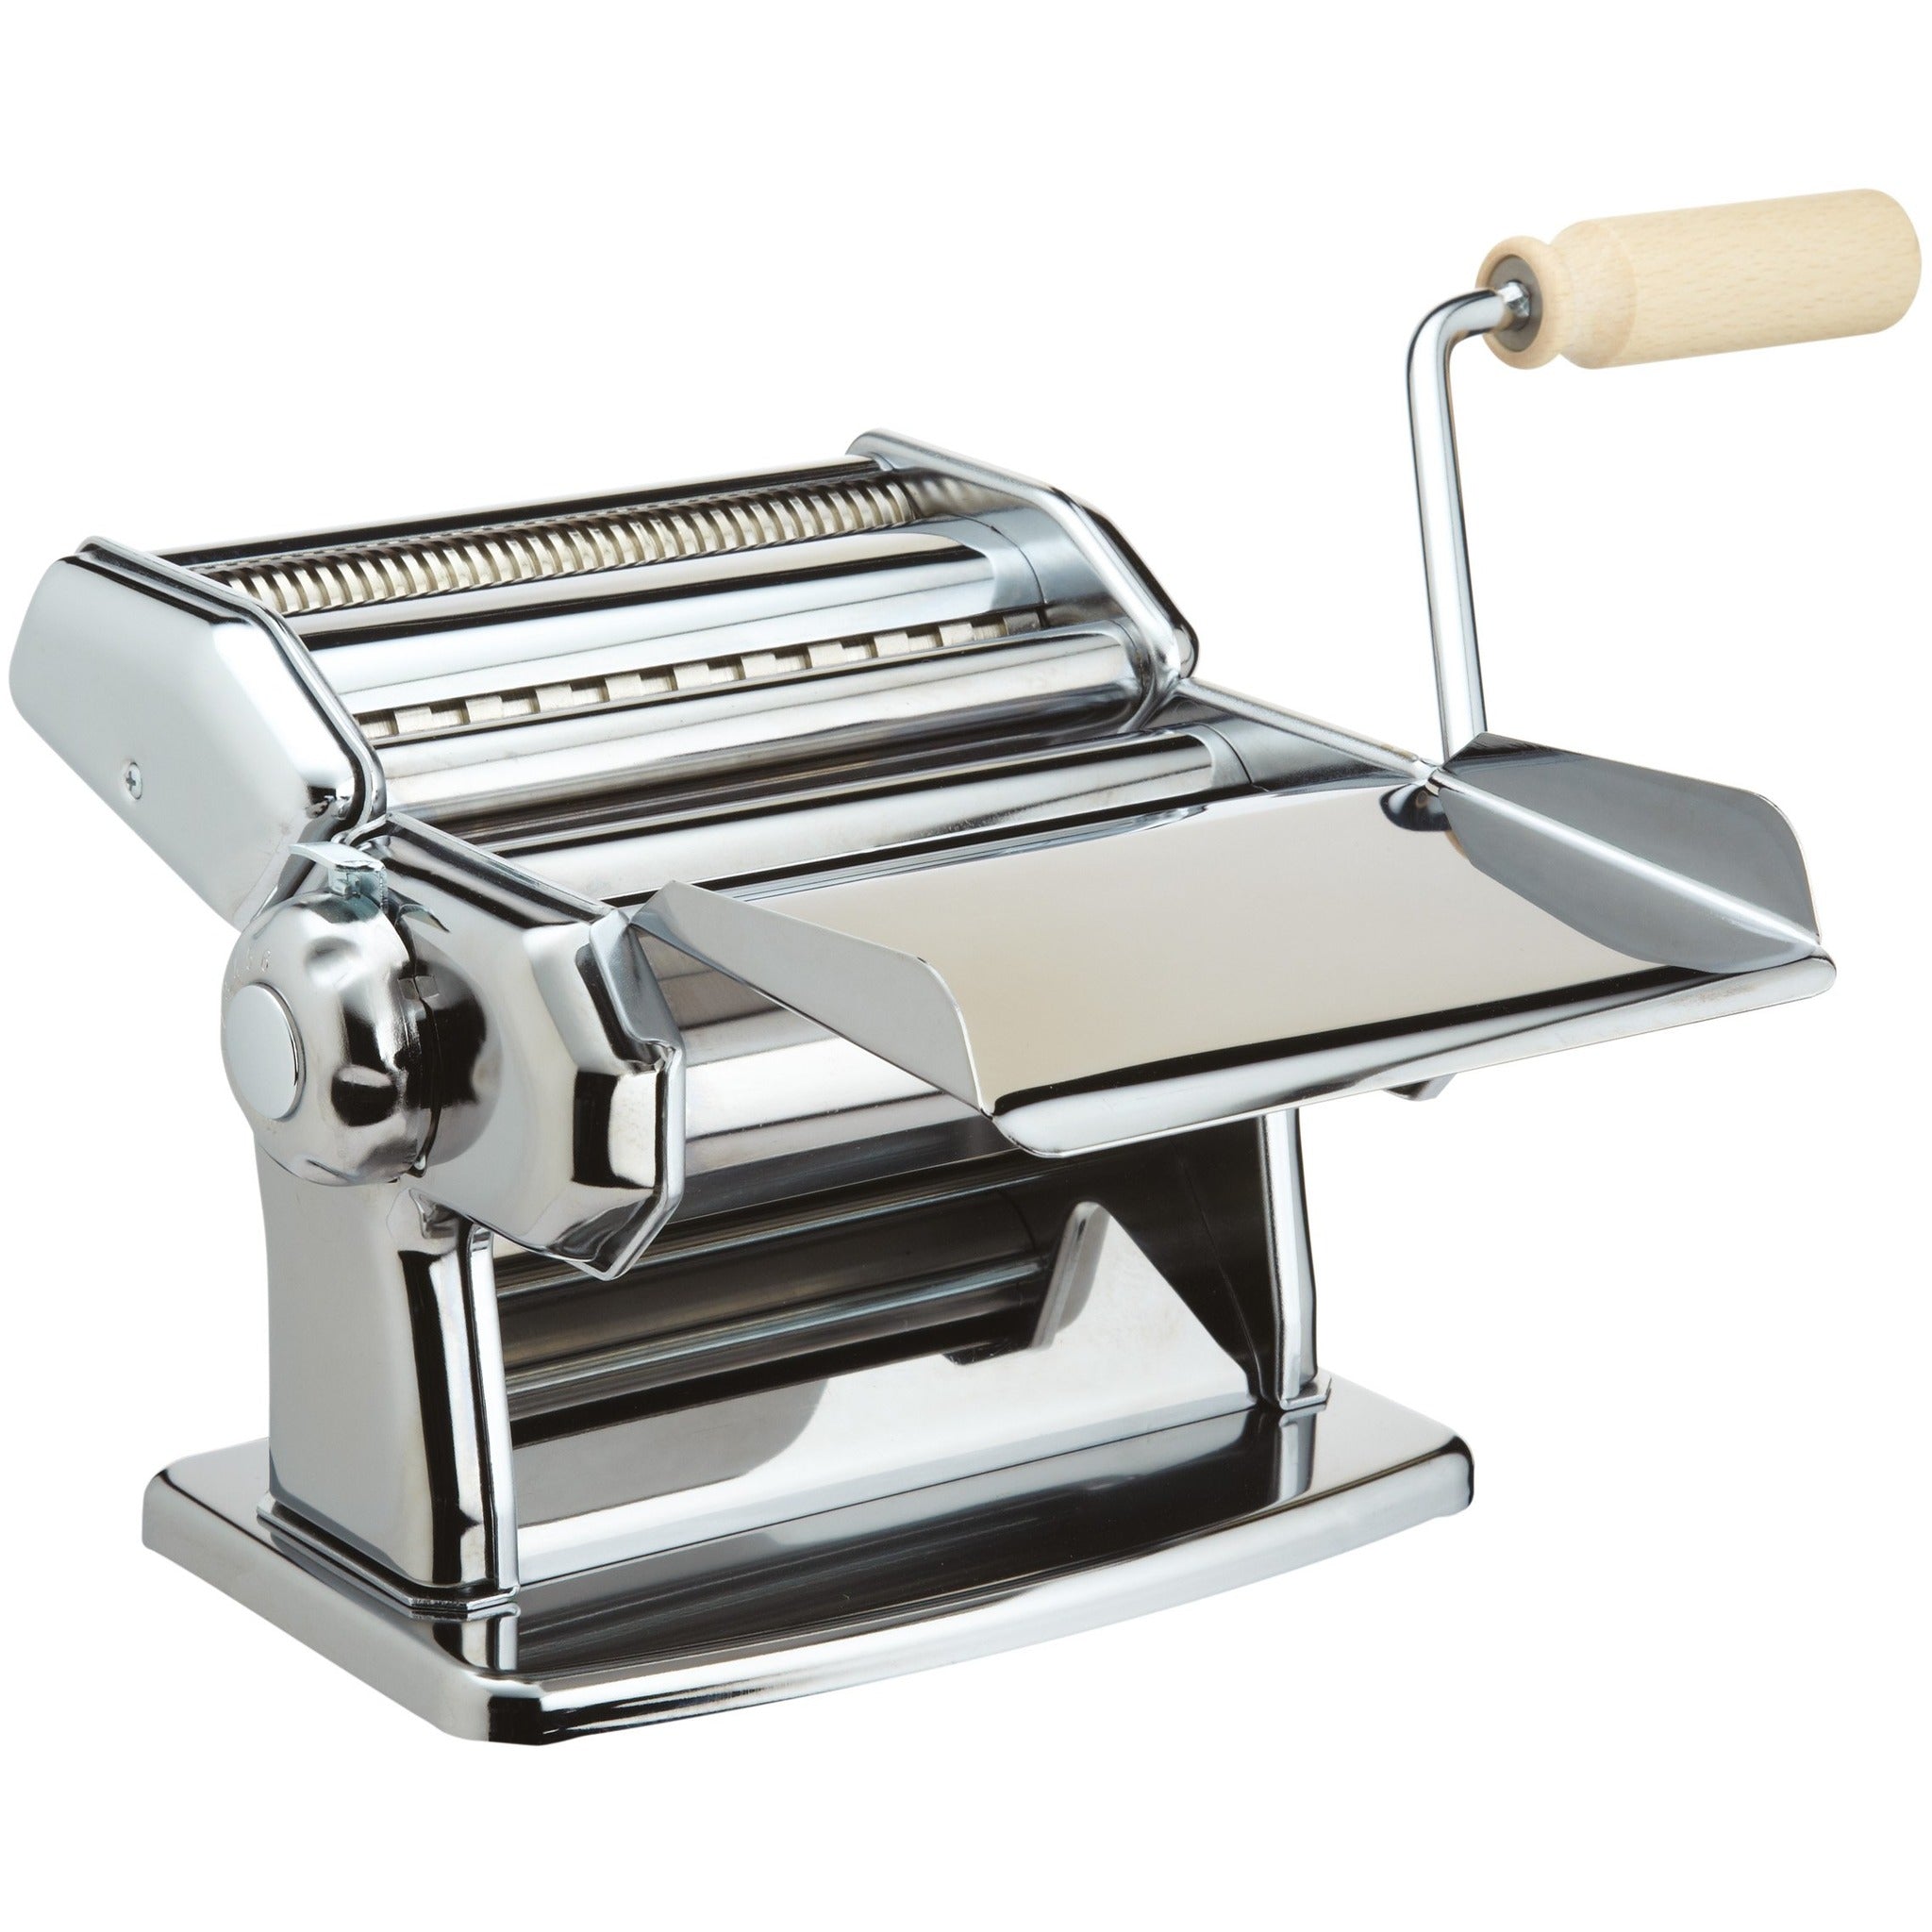 Imperia Pasta Maker Machine- Deluxe 11 Piece Set w Machine, Attachments,  Recipes and Accessories